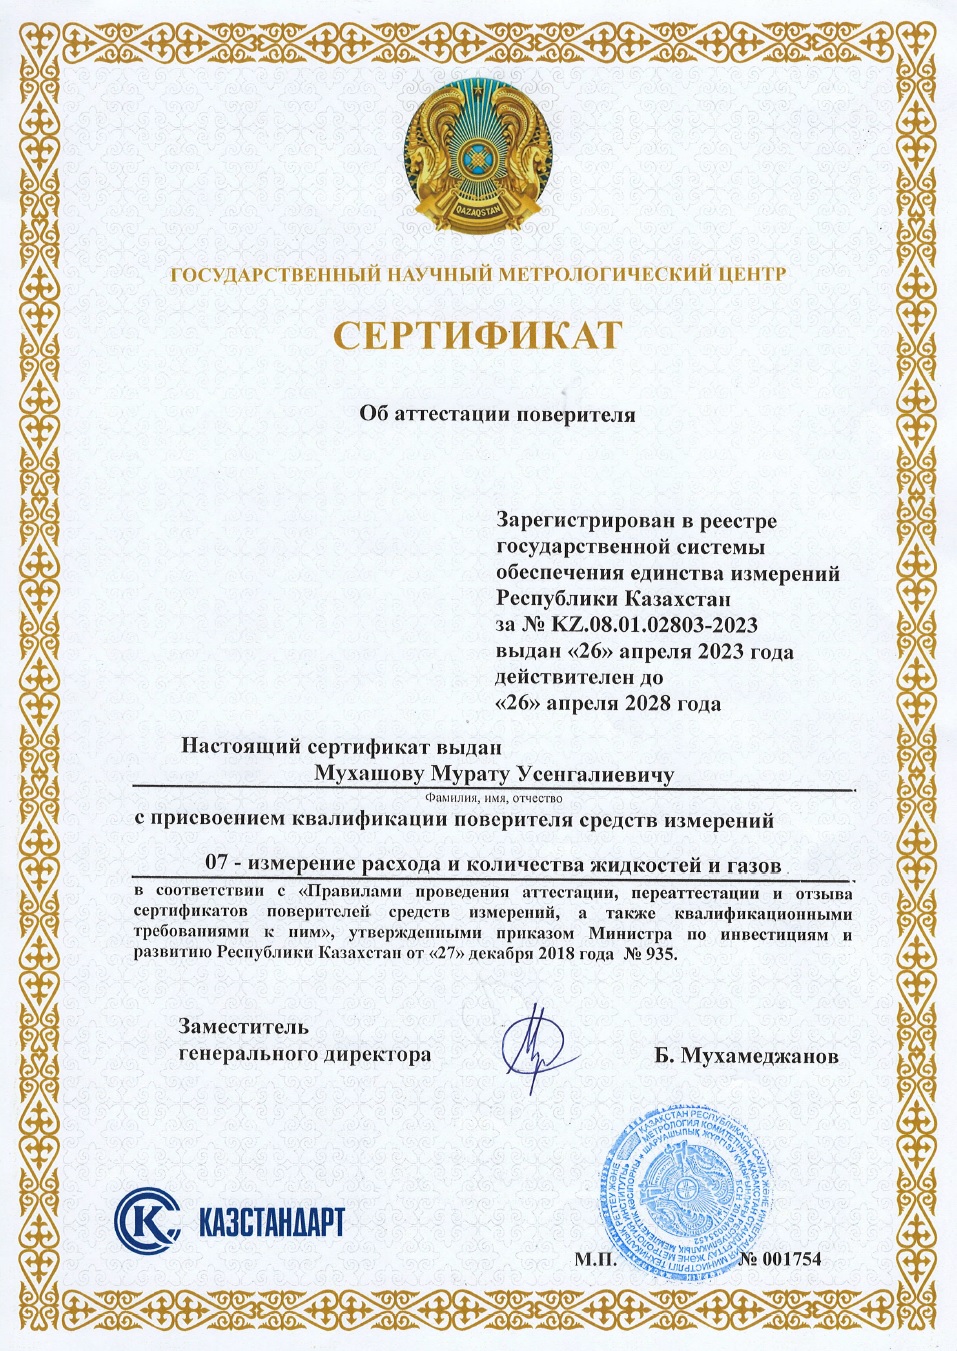 Сертификат поверителя измерении расхода и количества жидкостей и газов. №001754. Мухашов М.У.